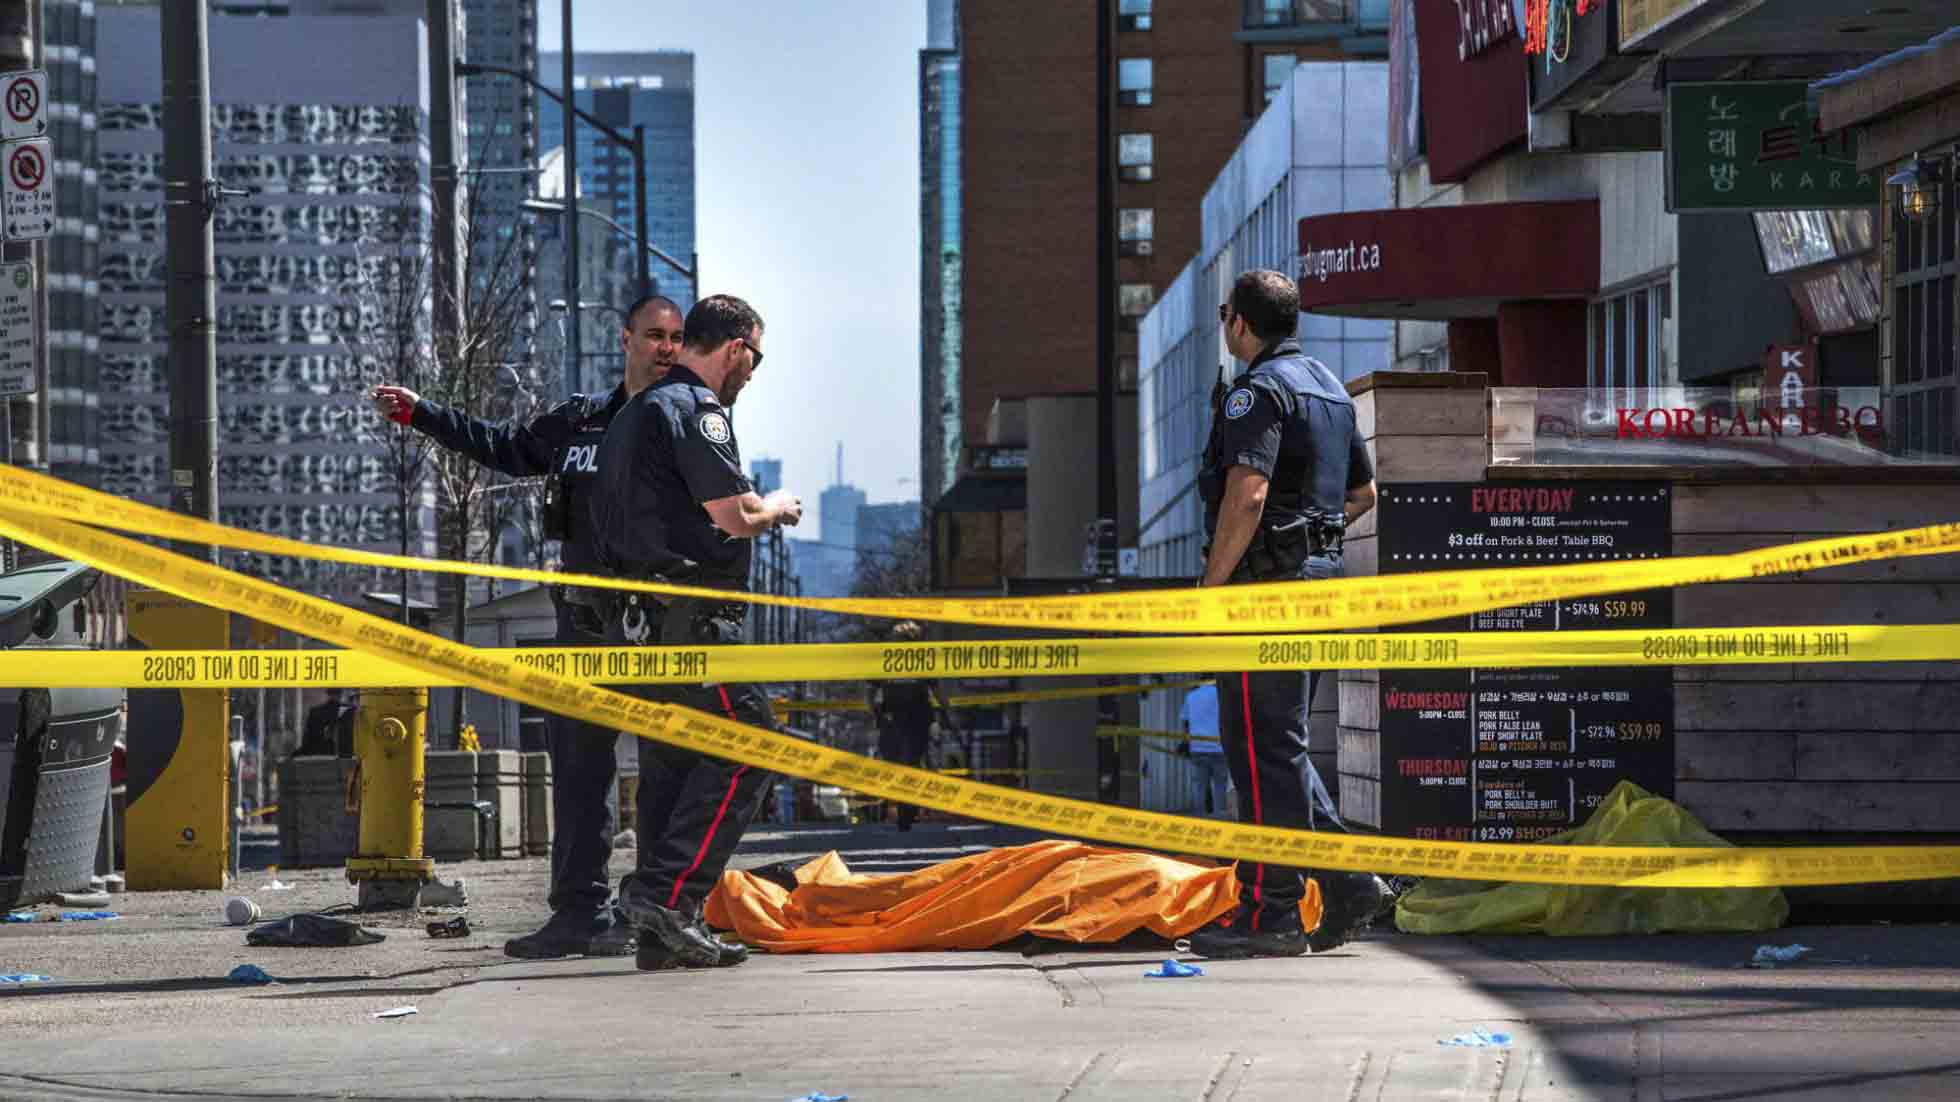 El primer ministro Justin Trudeau descartó por el momento que el ataque en North York estuviera vinculado con terrorismo